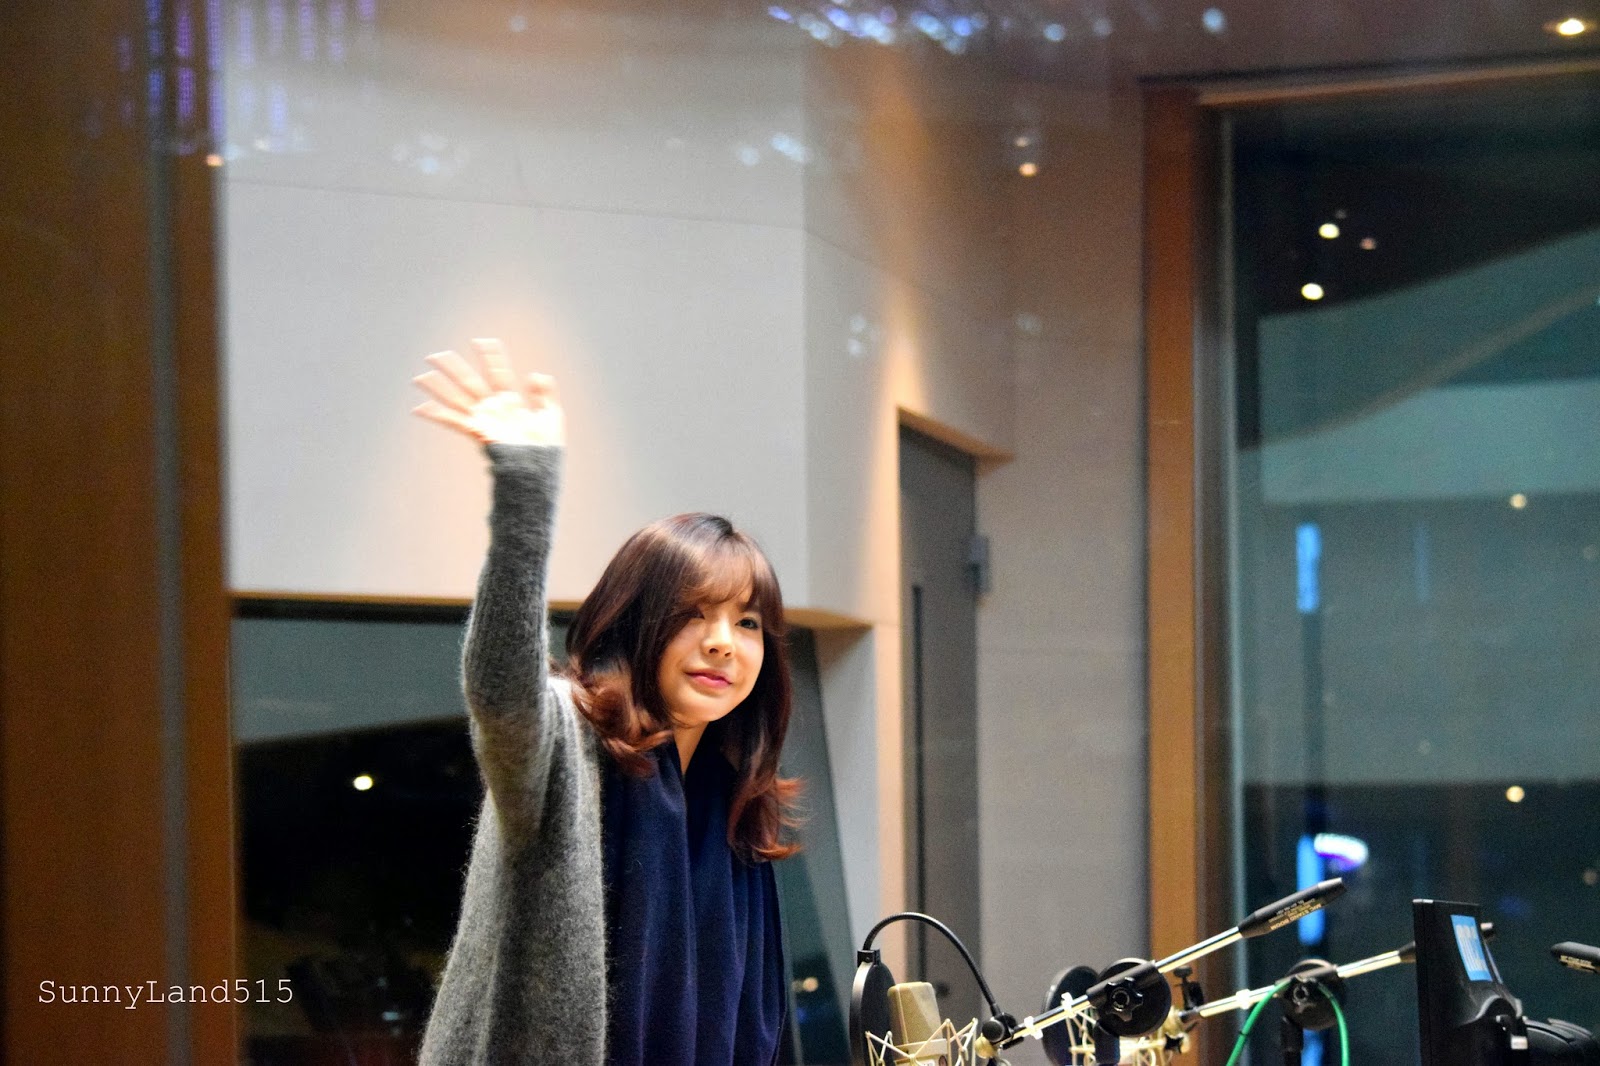 [OTHER][06-02-2015]Hình ảnh mới nhất từ DJ Sunny tại Radio MBC FM4U - "FM Date" - Page 10 DSC_0011_Fotor